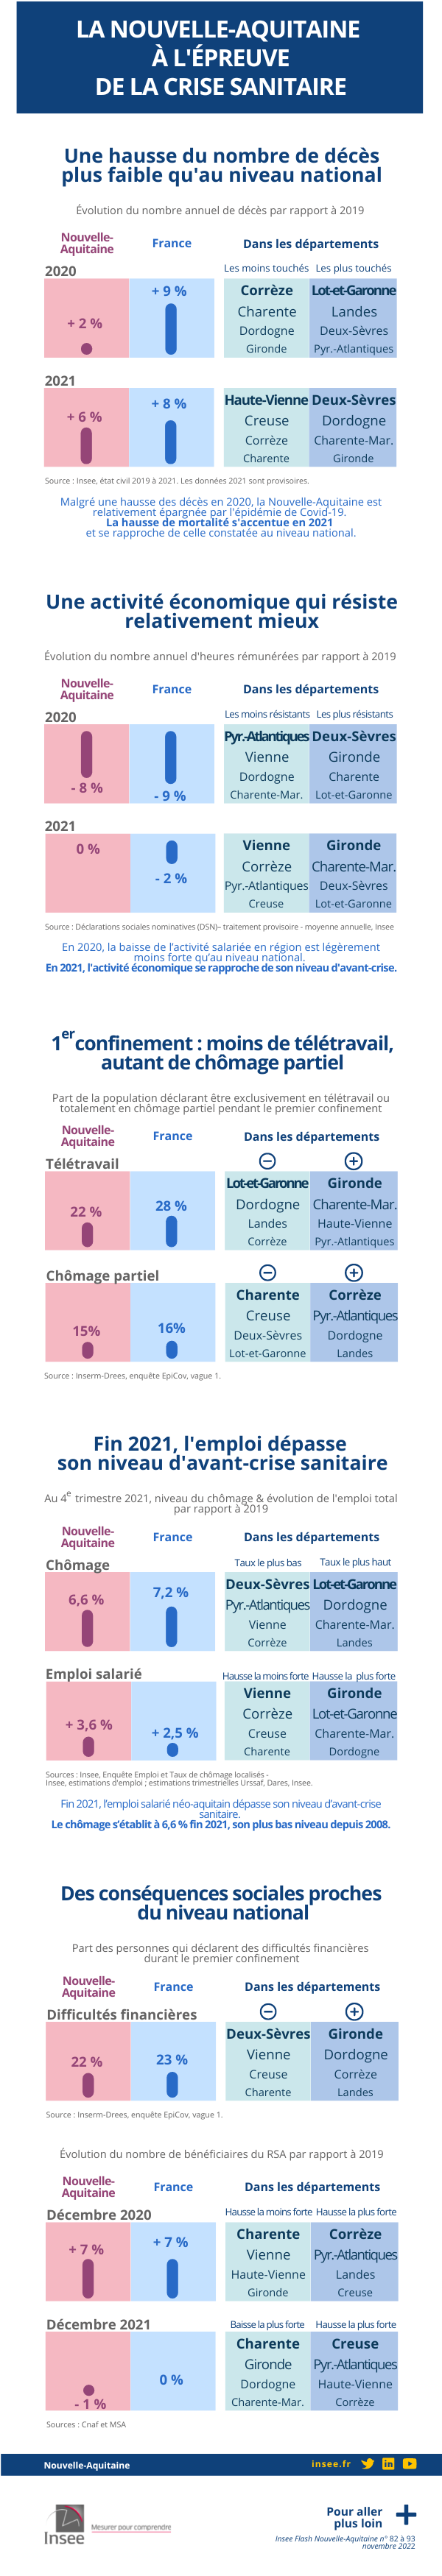 Infographie - La Nouvelle-Aquitaine à l'épreuve de la crise sanitaire